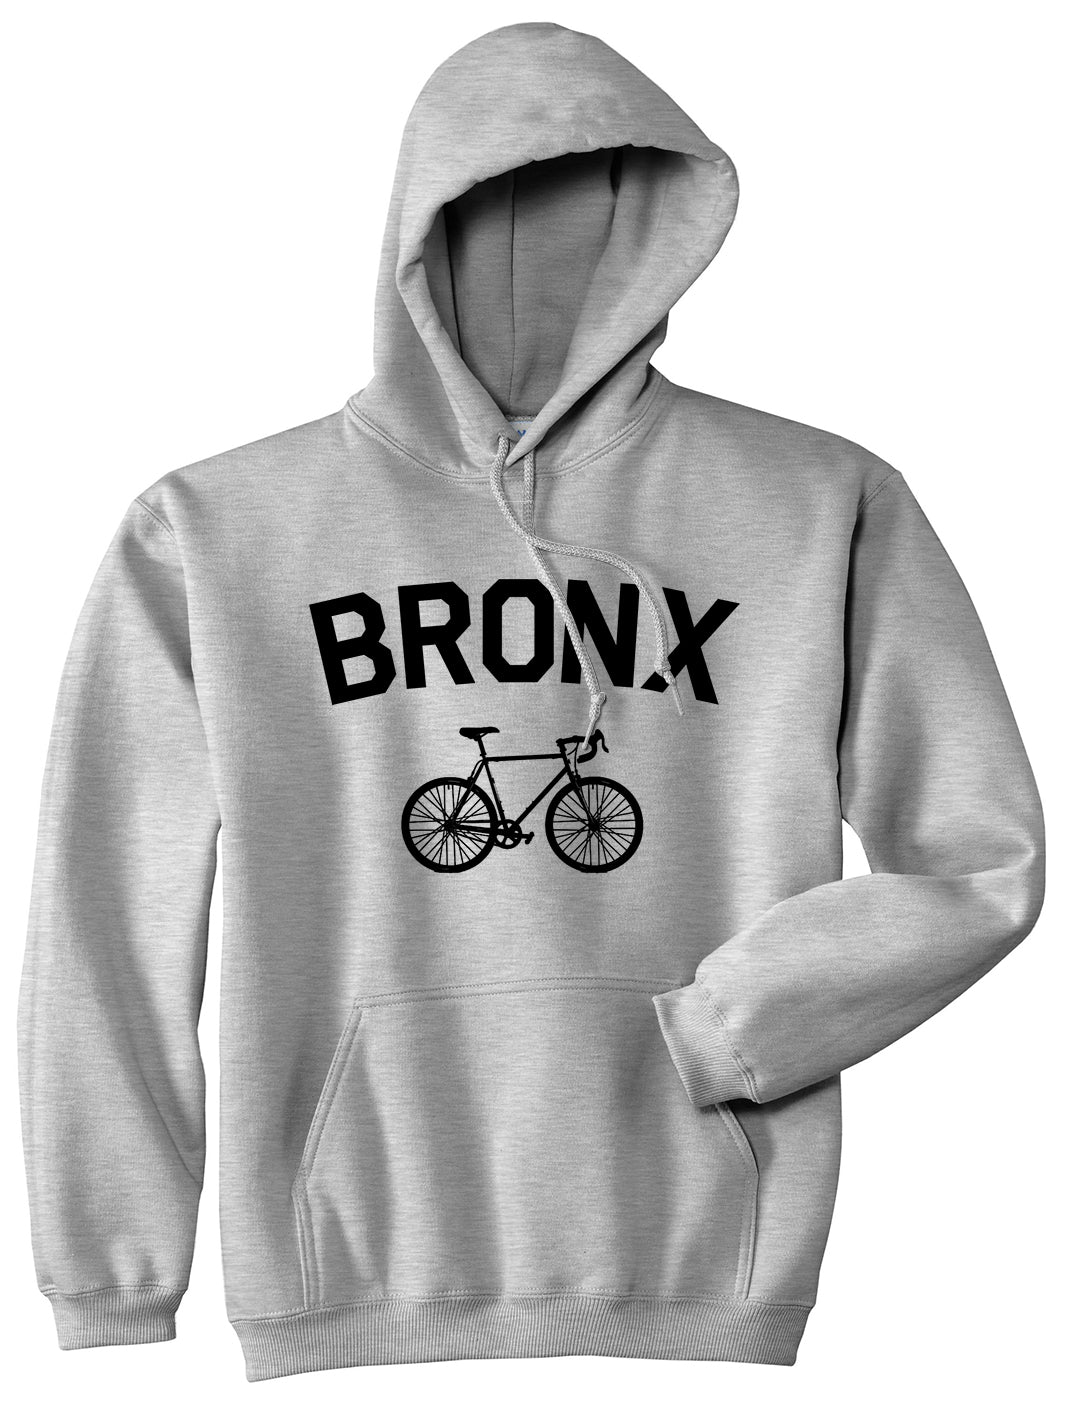 Bronx Vintage Bike Cycling Mens Pullover Hoodie Grey